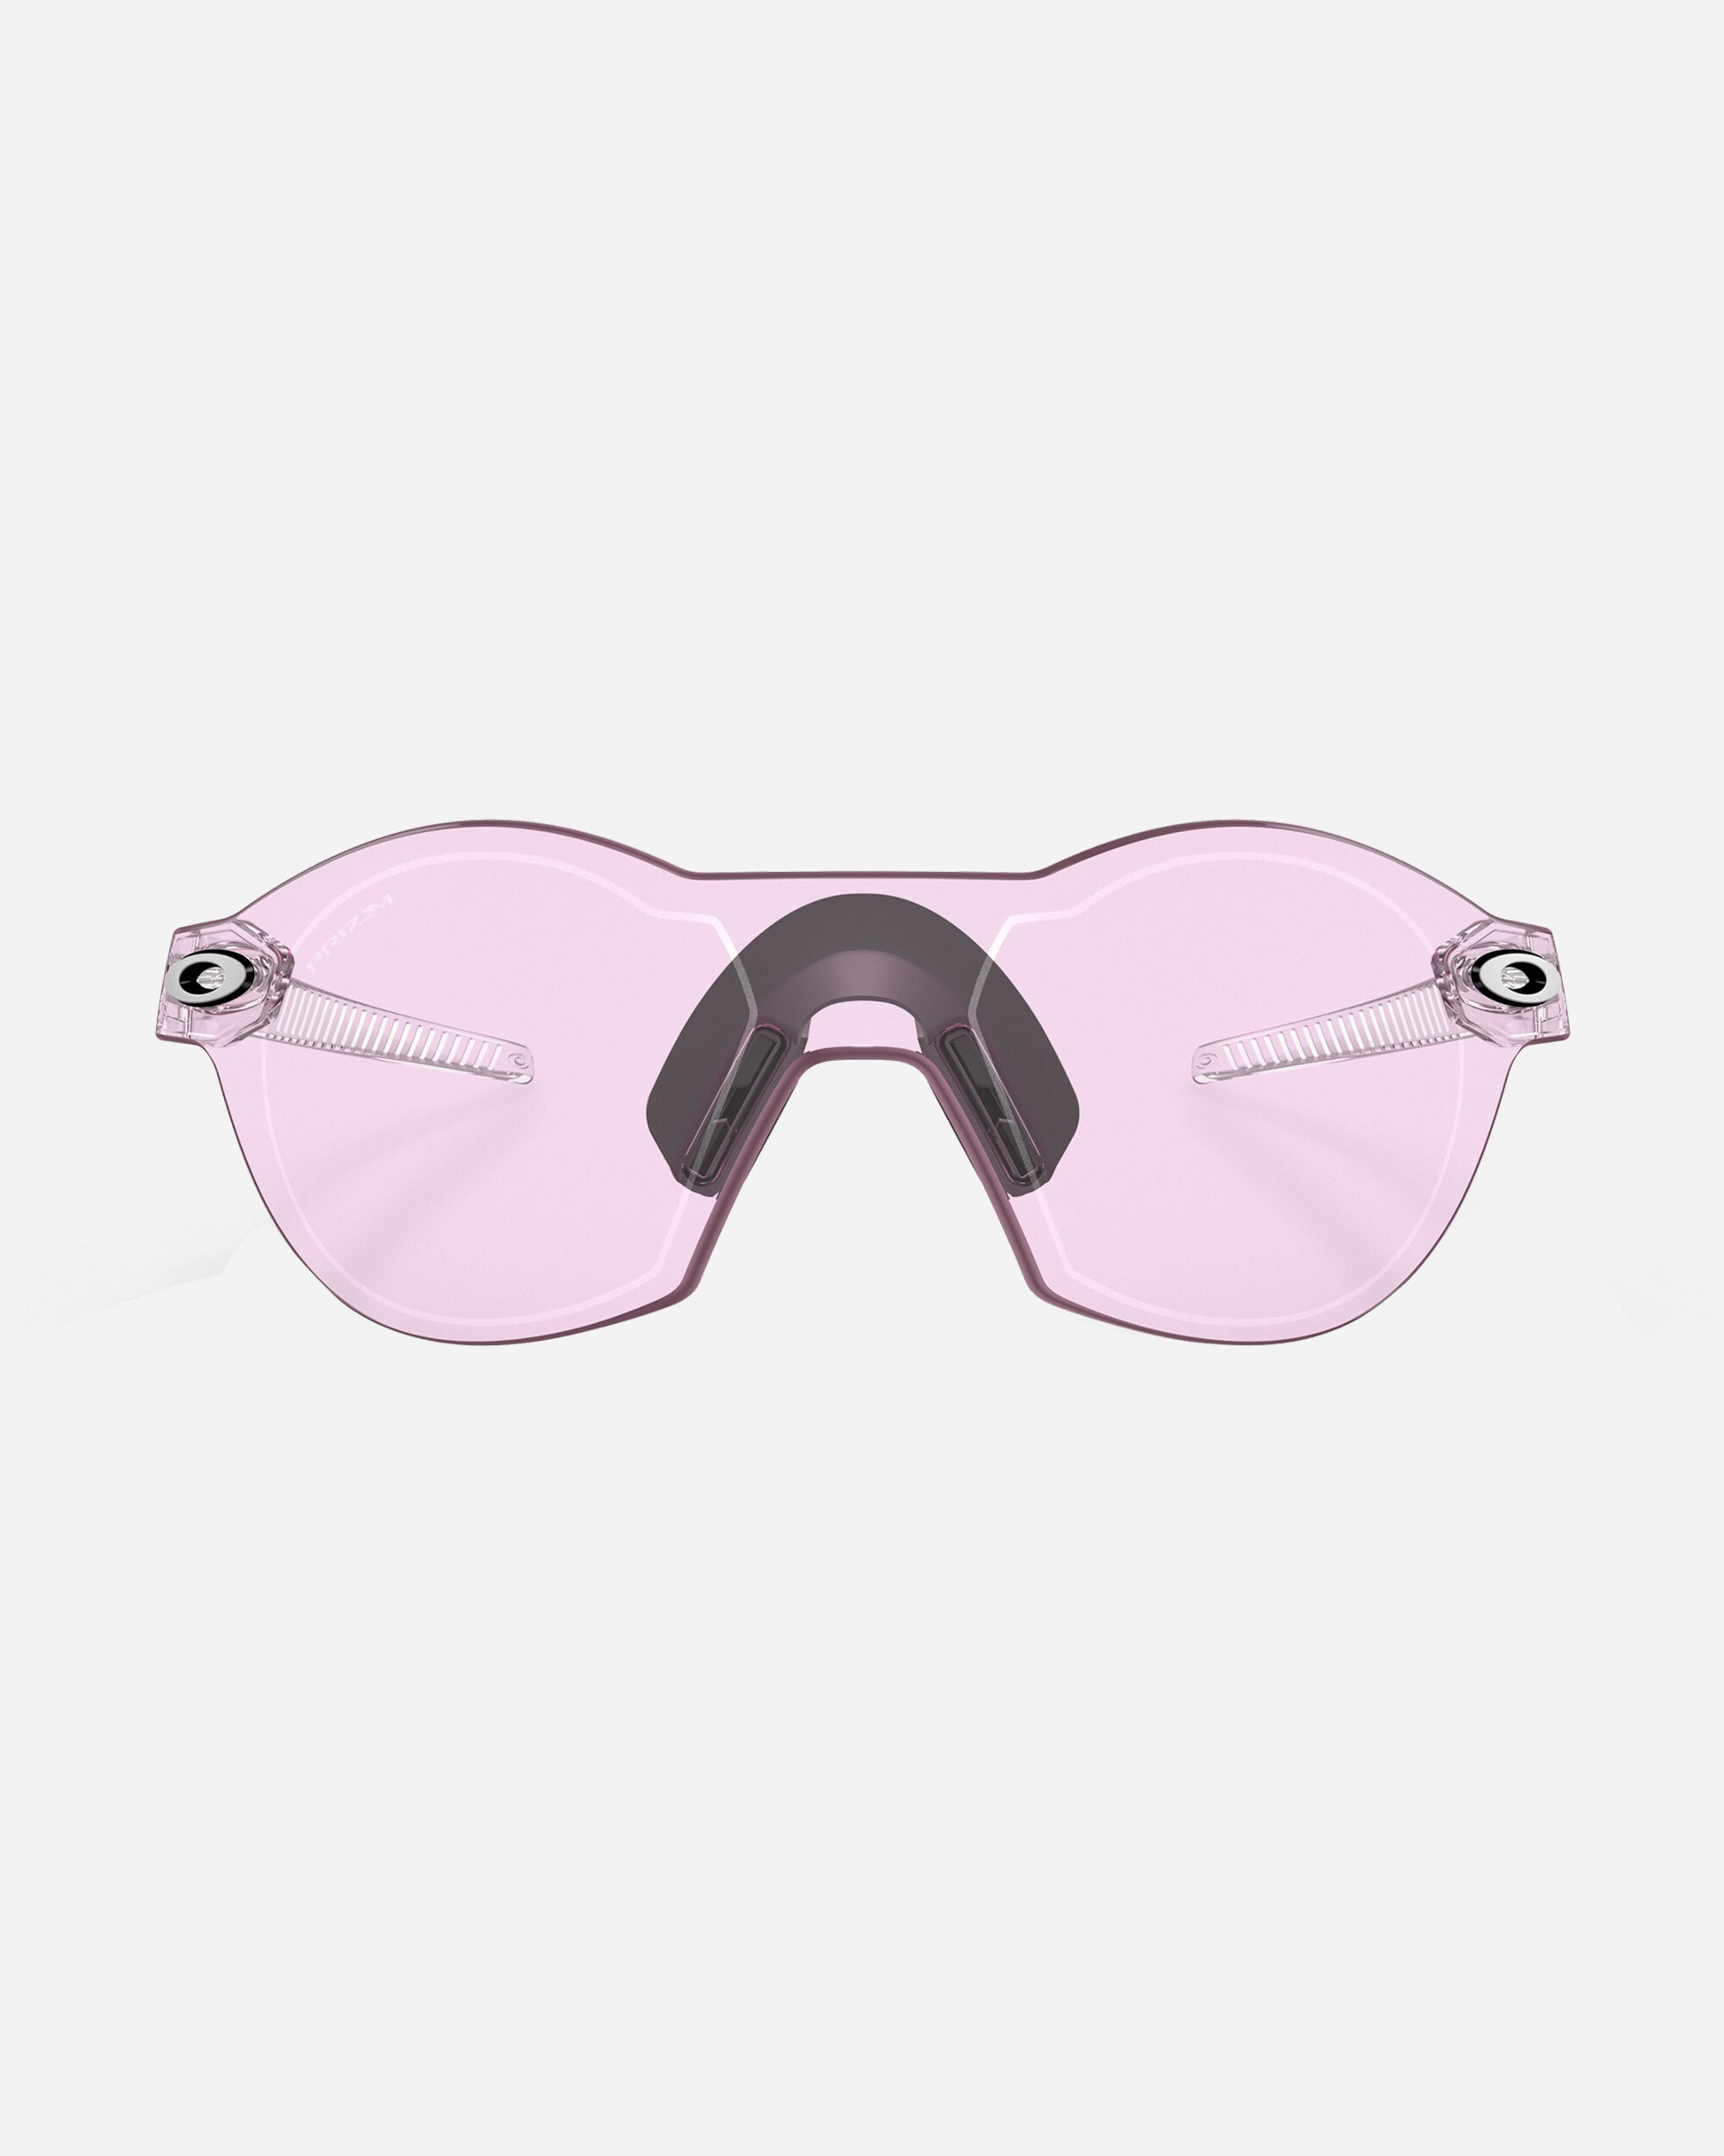 Oakley Re:Subzero Clear Eyewear Sunglasses OO9098 08